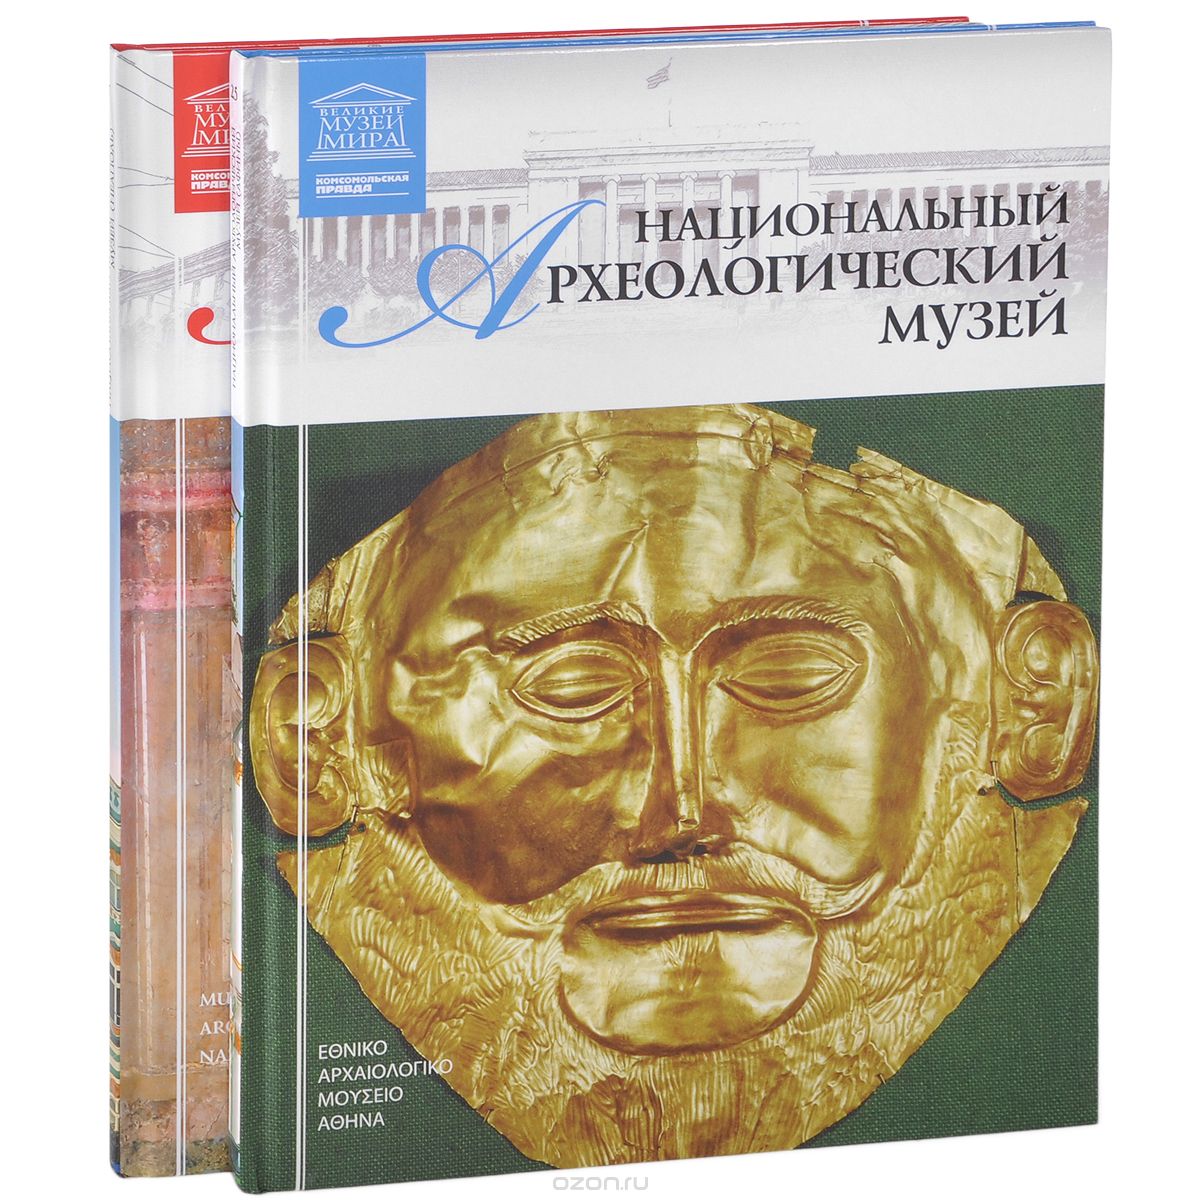 Скачать книгу "Археологические музеи (комплект из 2 книг), Д. Перова"